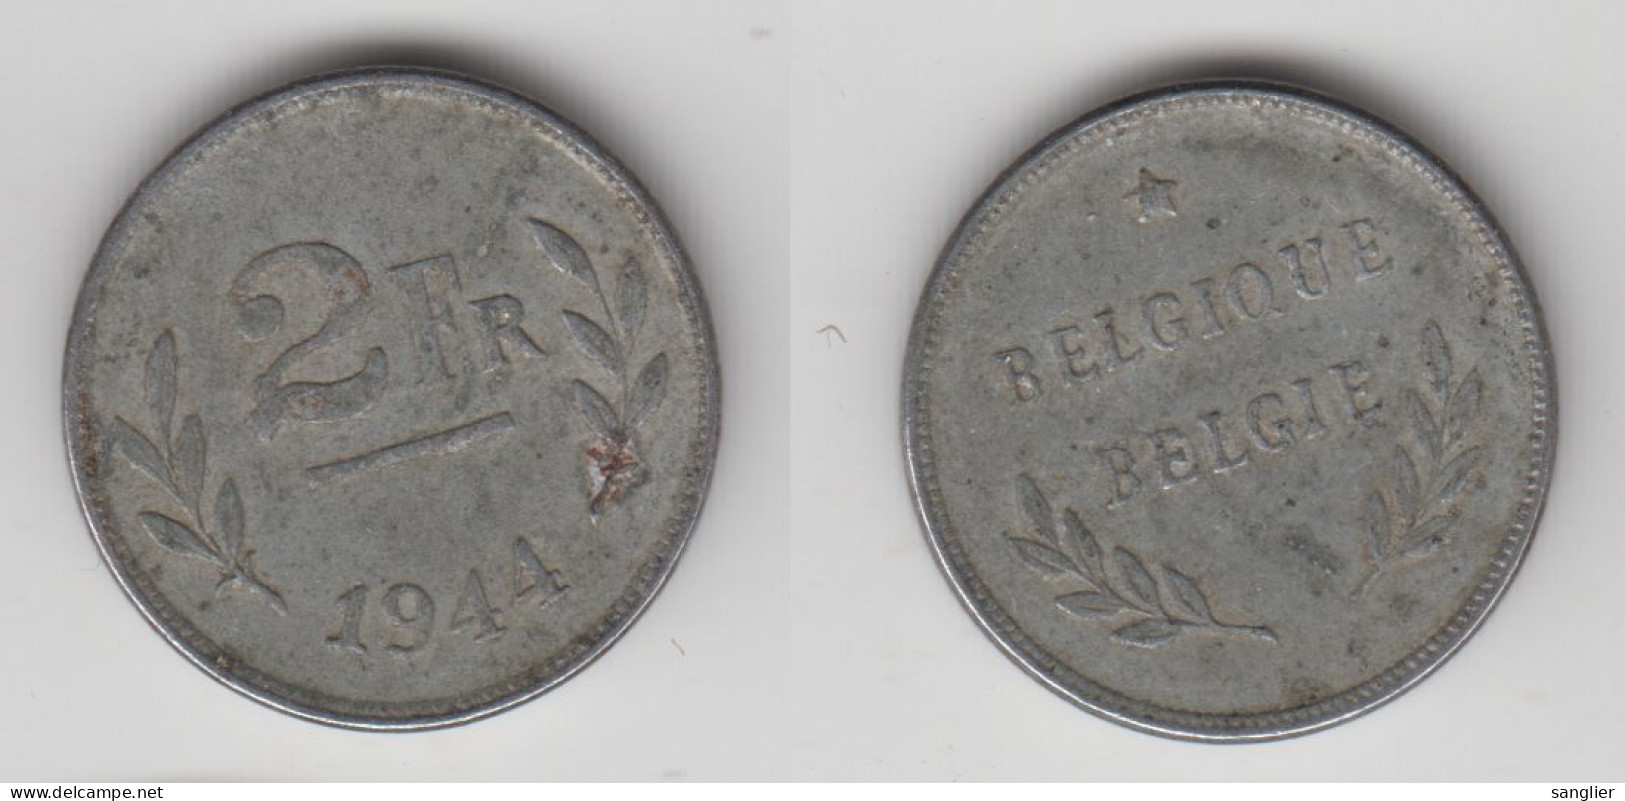 BELGIQUE - 2 FRANCS 1944 - 2 Francs (1944 Liberazione)